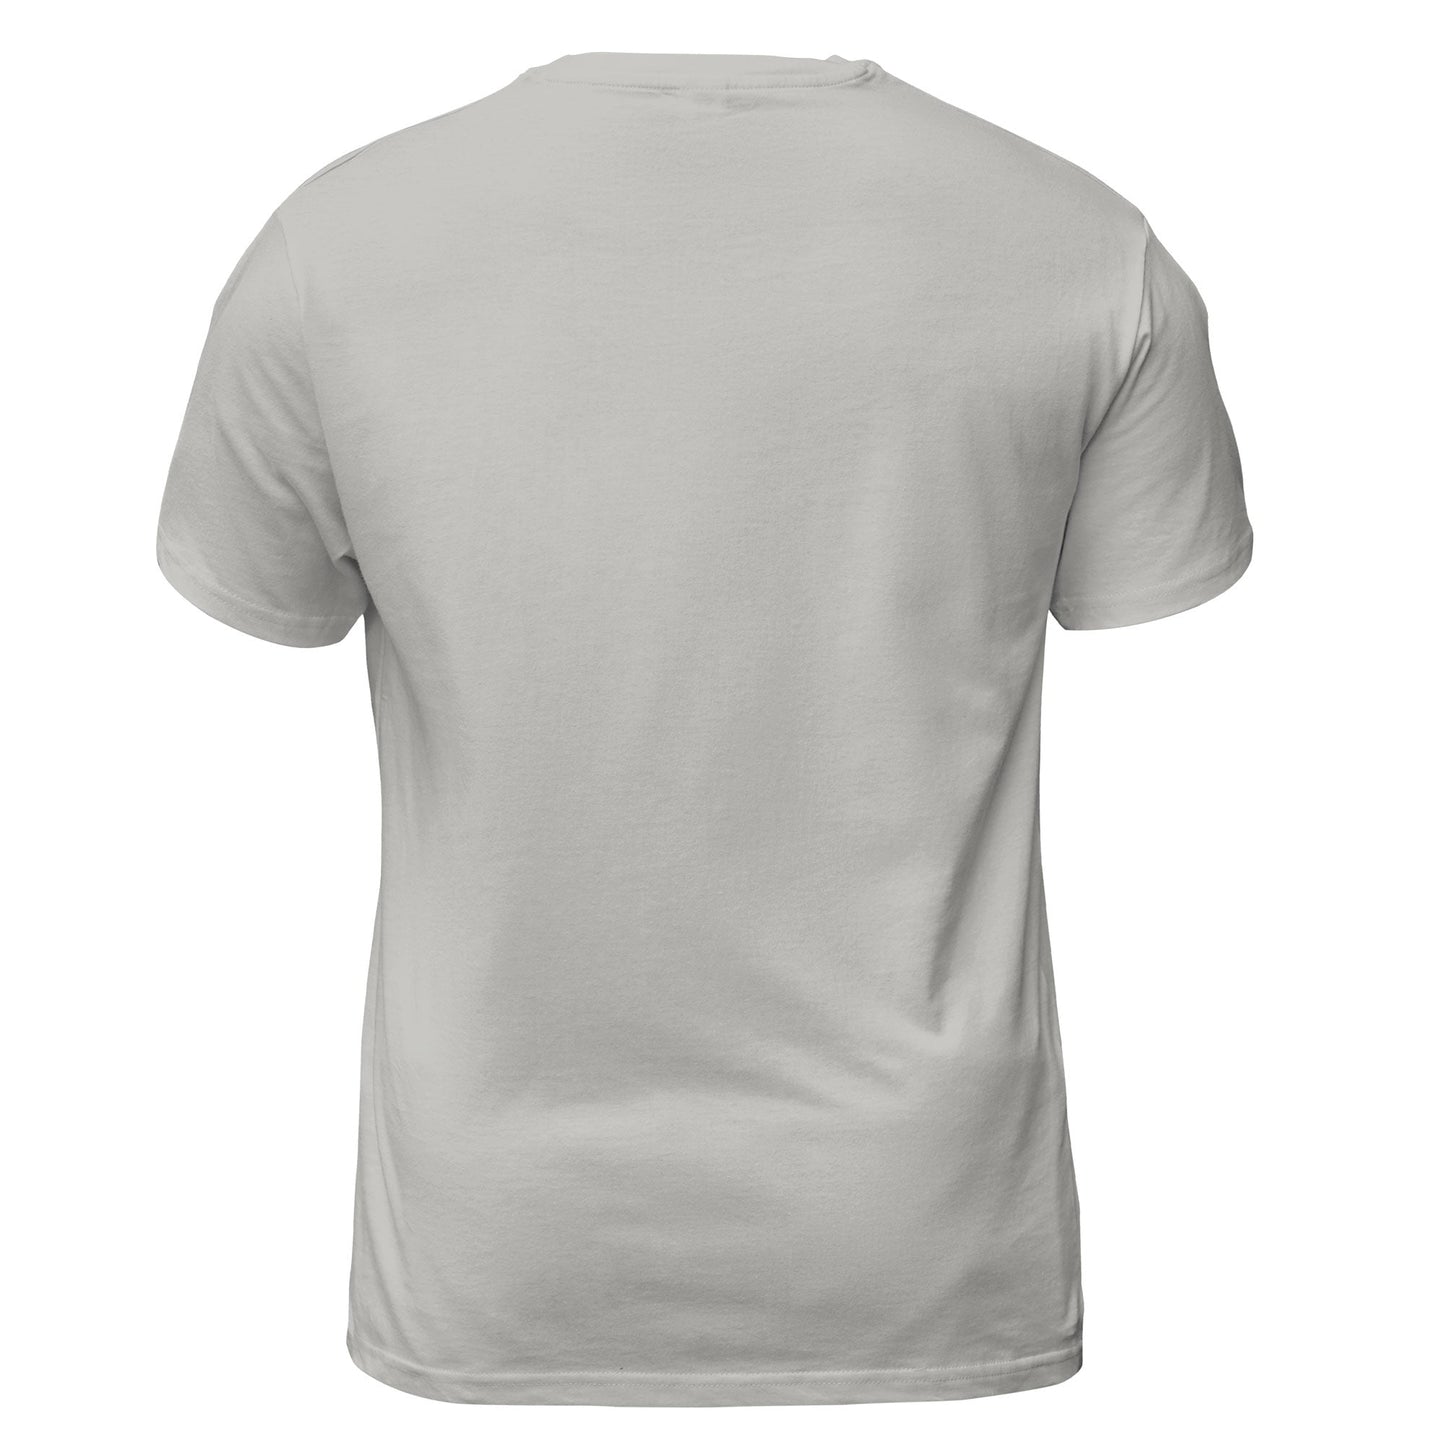 Samoyed - 3D Graphic T-Shirt